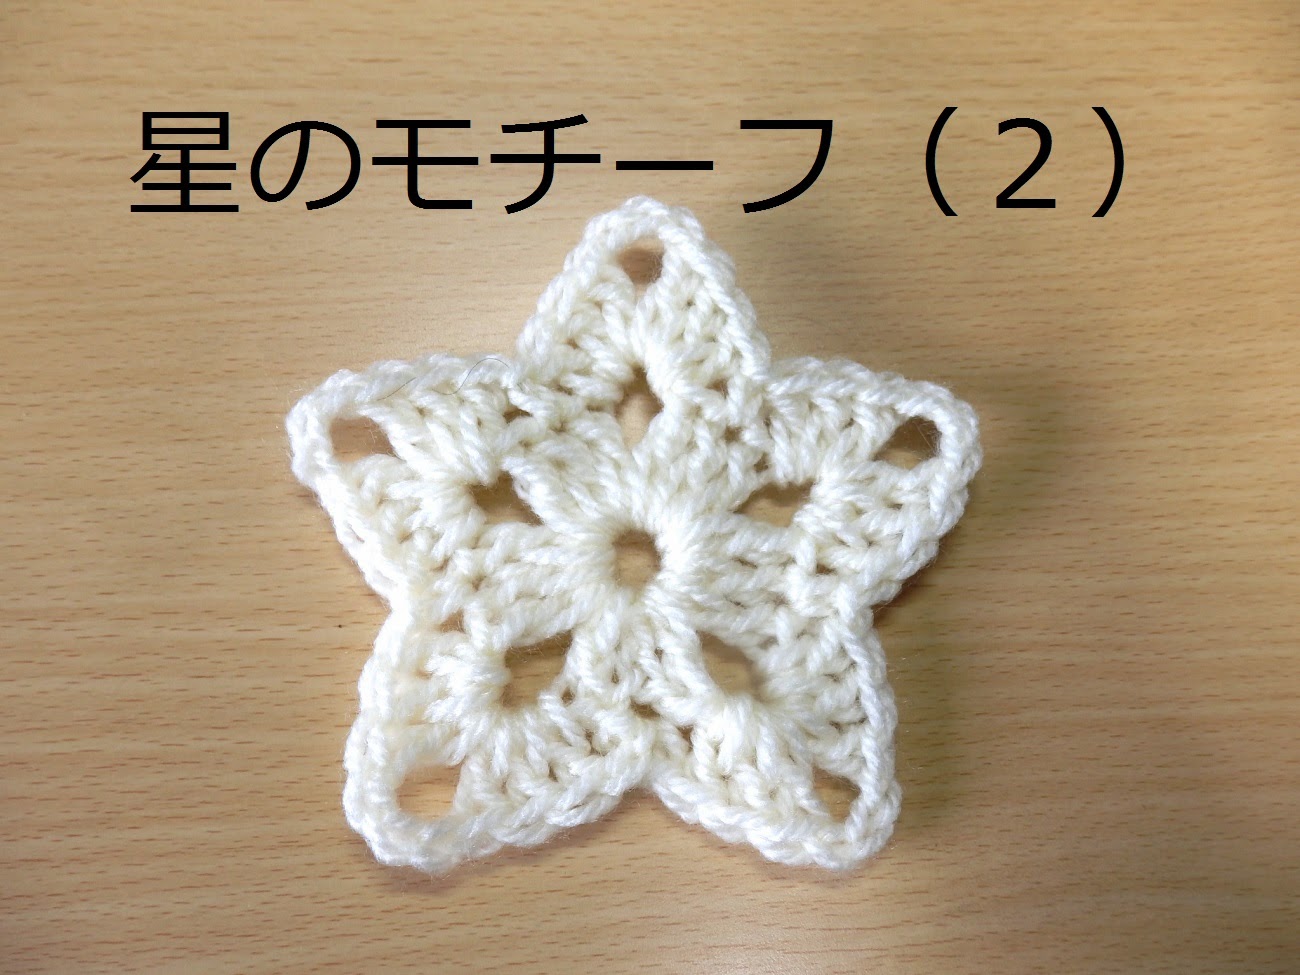 かぎ編み教室 クロッシェ ジャパン Crochet Japan ブログ 星のモチーフの編み図です かぎ編み教室 クロッシェ ジャパン